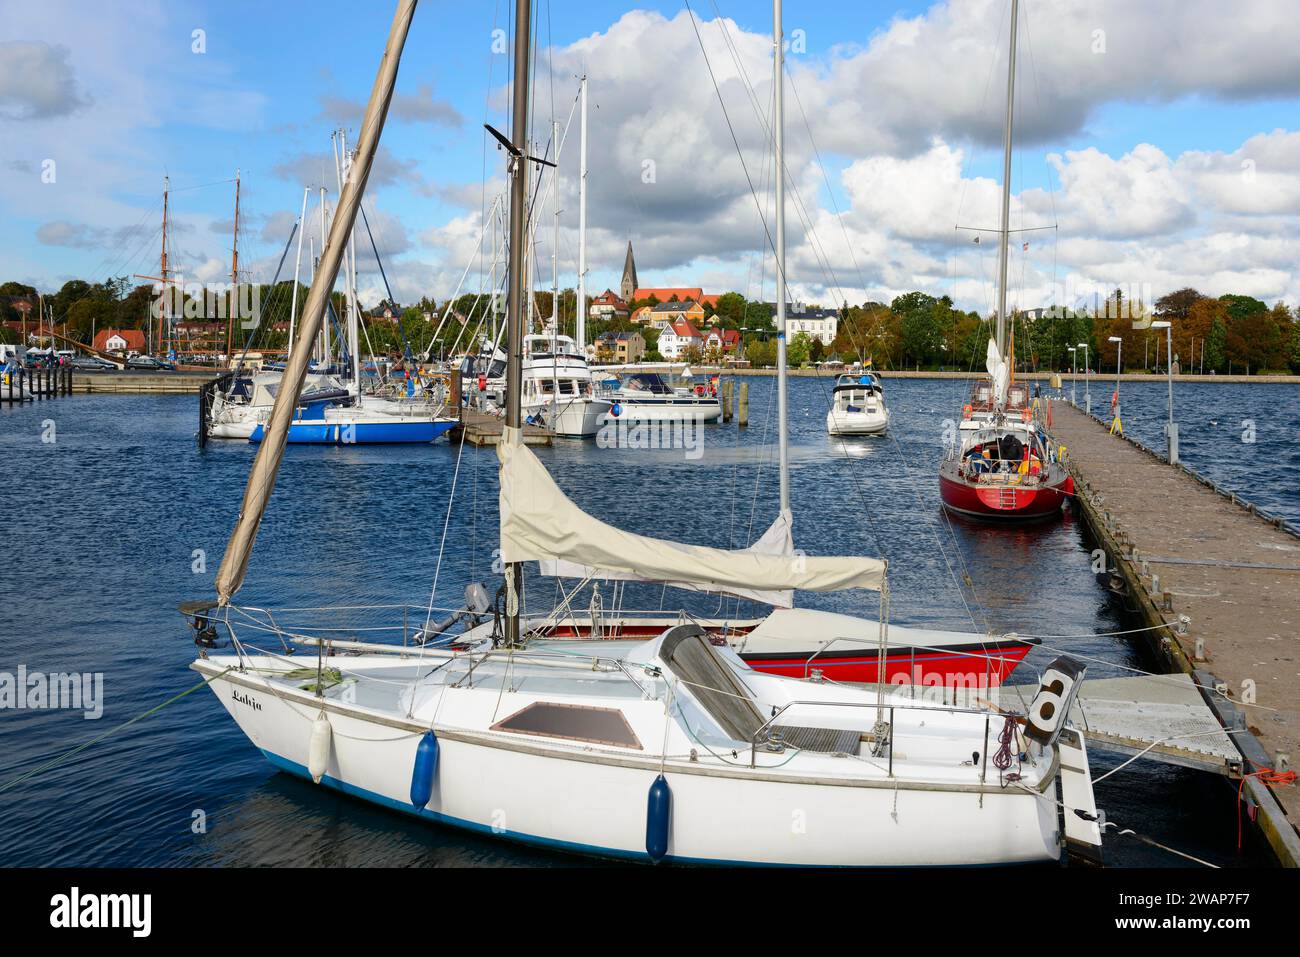 Segelboote liegen im ruhigen Wasser eines Yachthafens, mit Blick auf die Stadt und bewölktem Himmel im Hintergrund, Eckernförde, Schleswig-Holstein, Deutschland, Europa Stockfoto